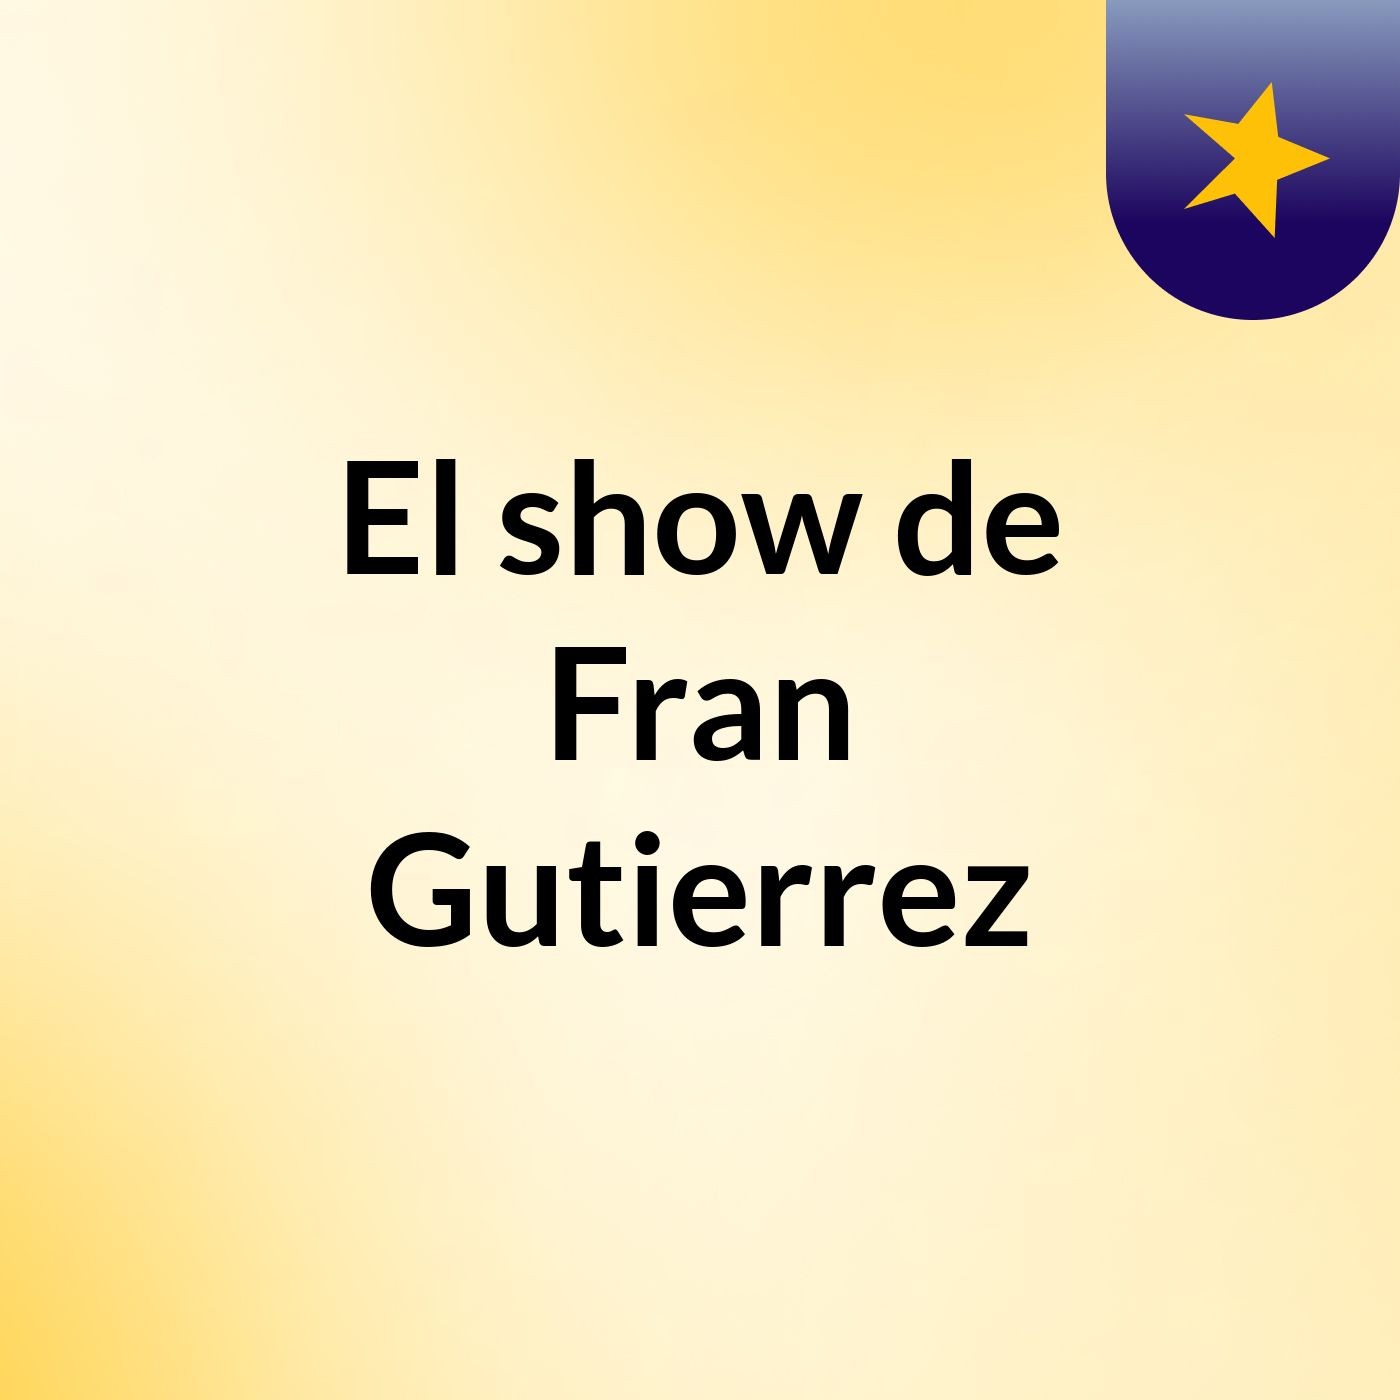 El show de Fran Gutierrez